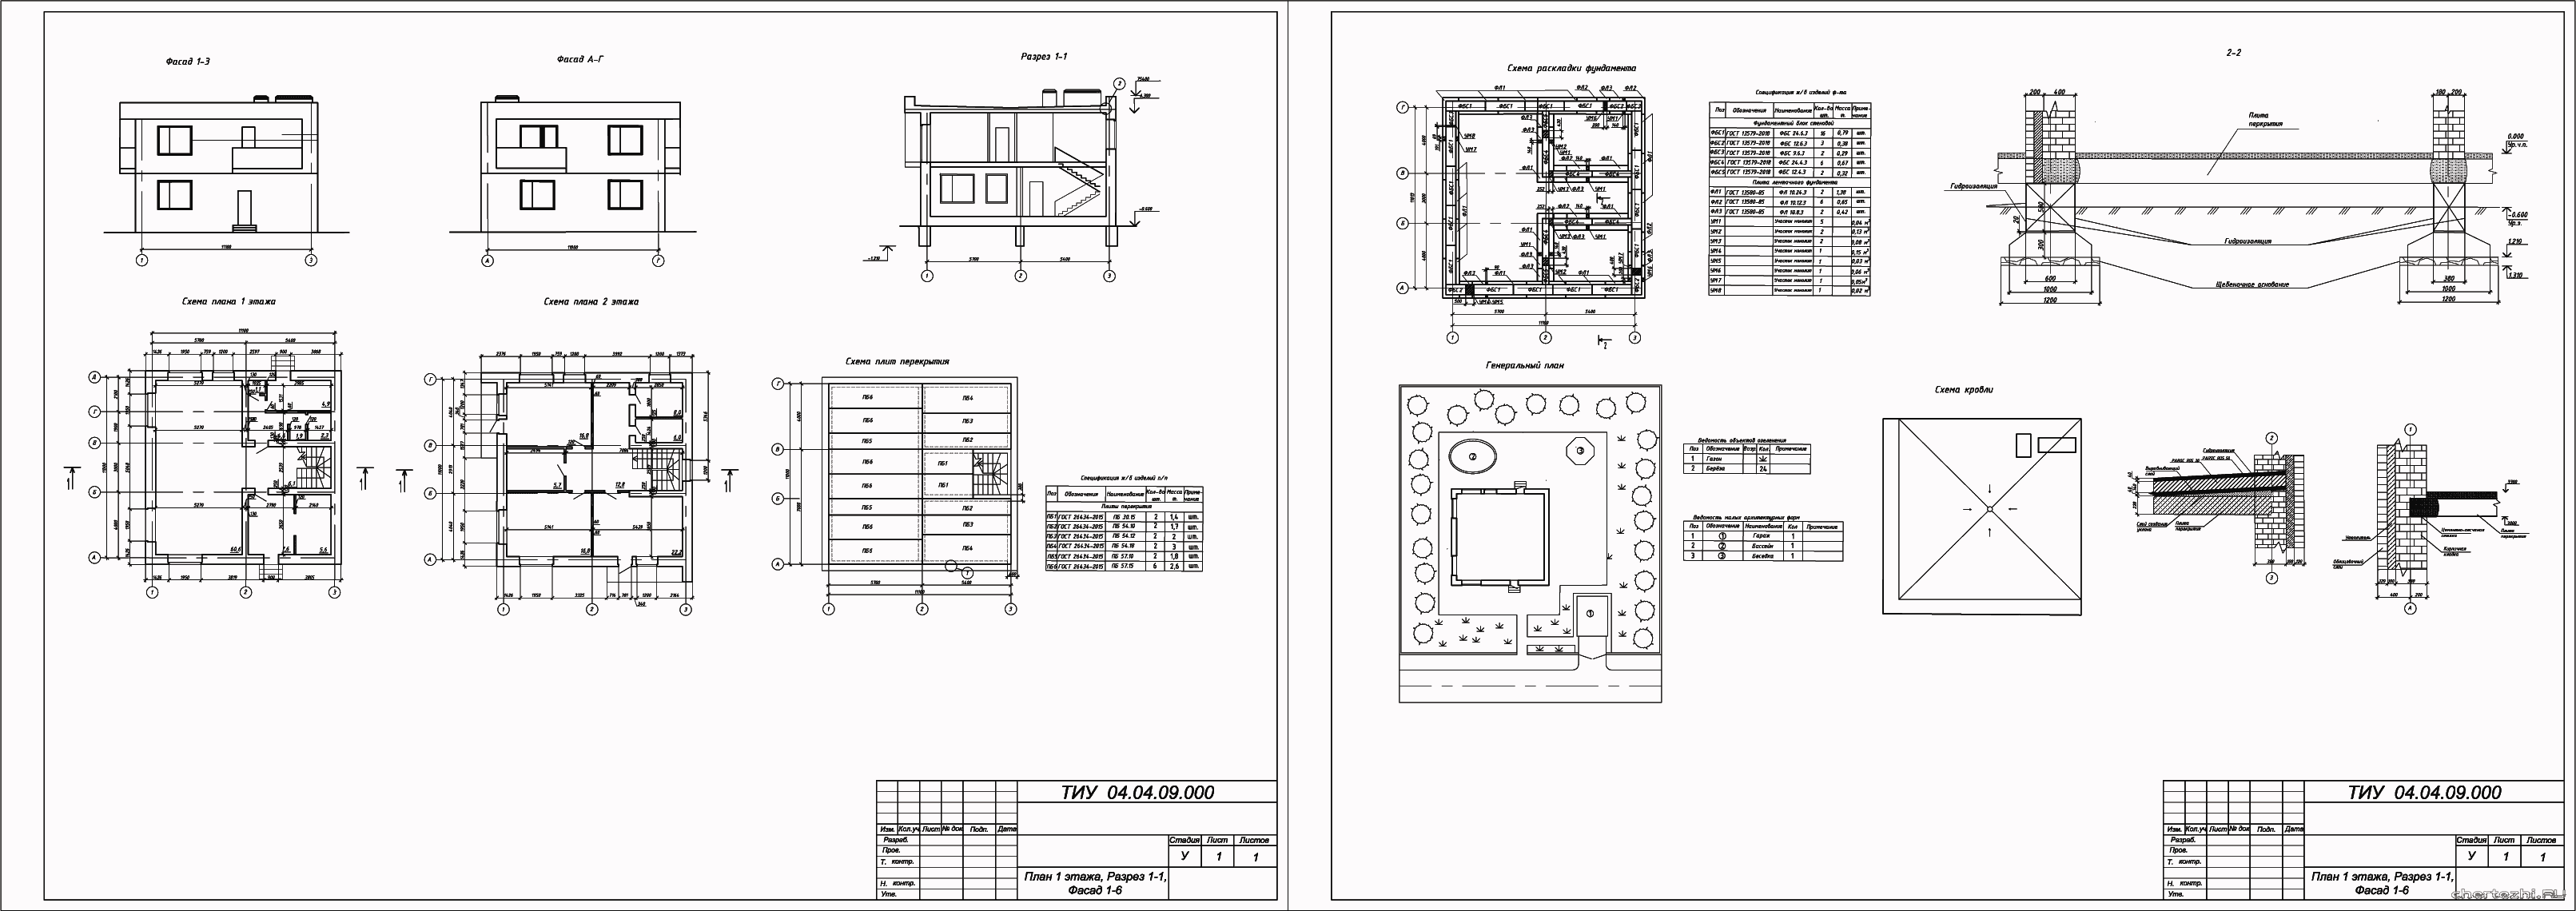 Курсовой проект - 2-х этажный индивидуальный жилой дом 11,1 х 11,1 в г. Тюмень